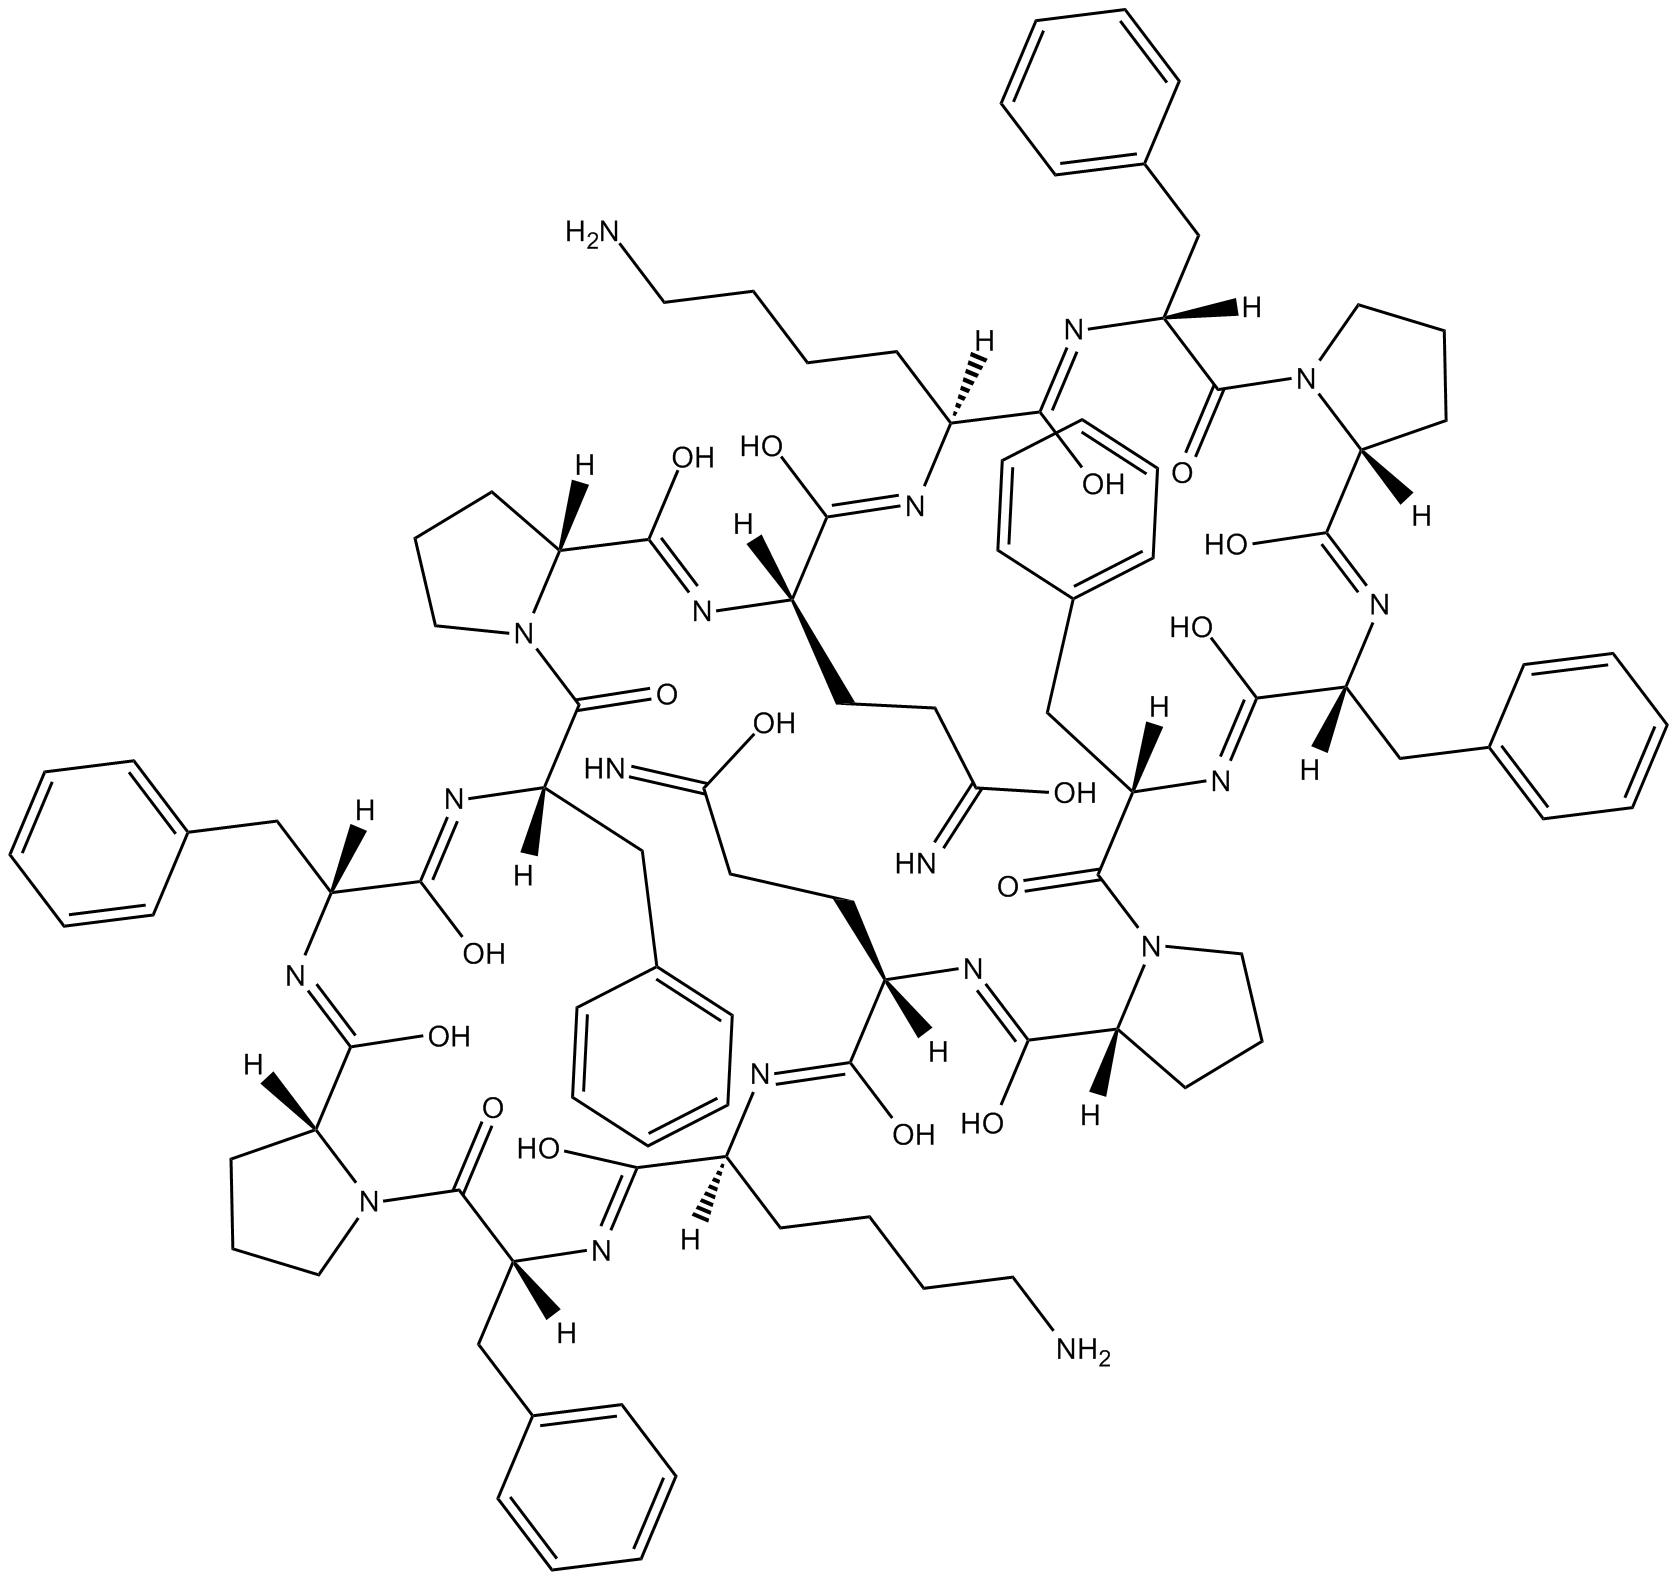 187-1, N-WASP inhibitor 化学構造